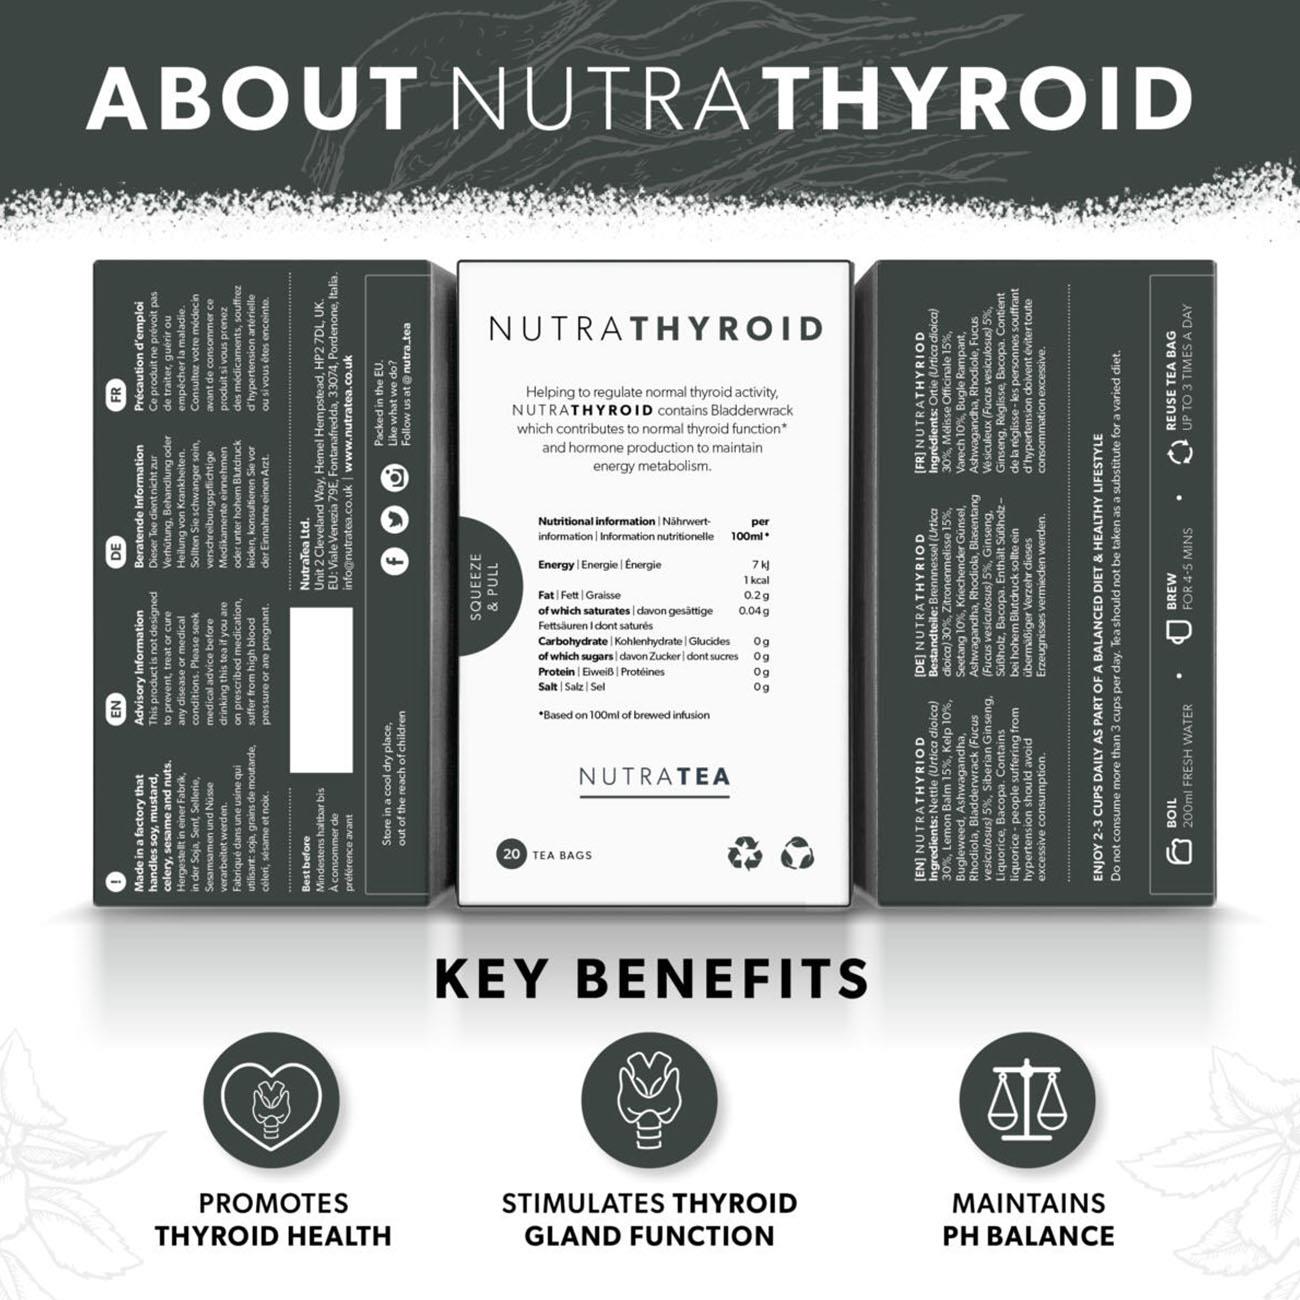 Nutra Thyroid Herbal Tea 20bags